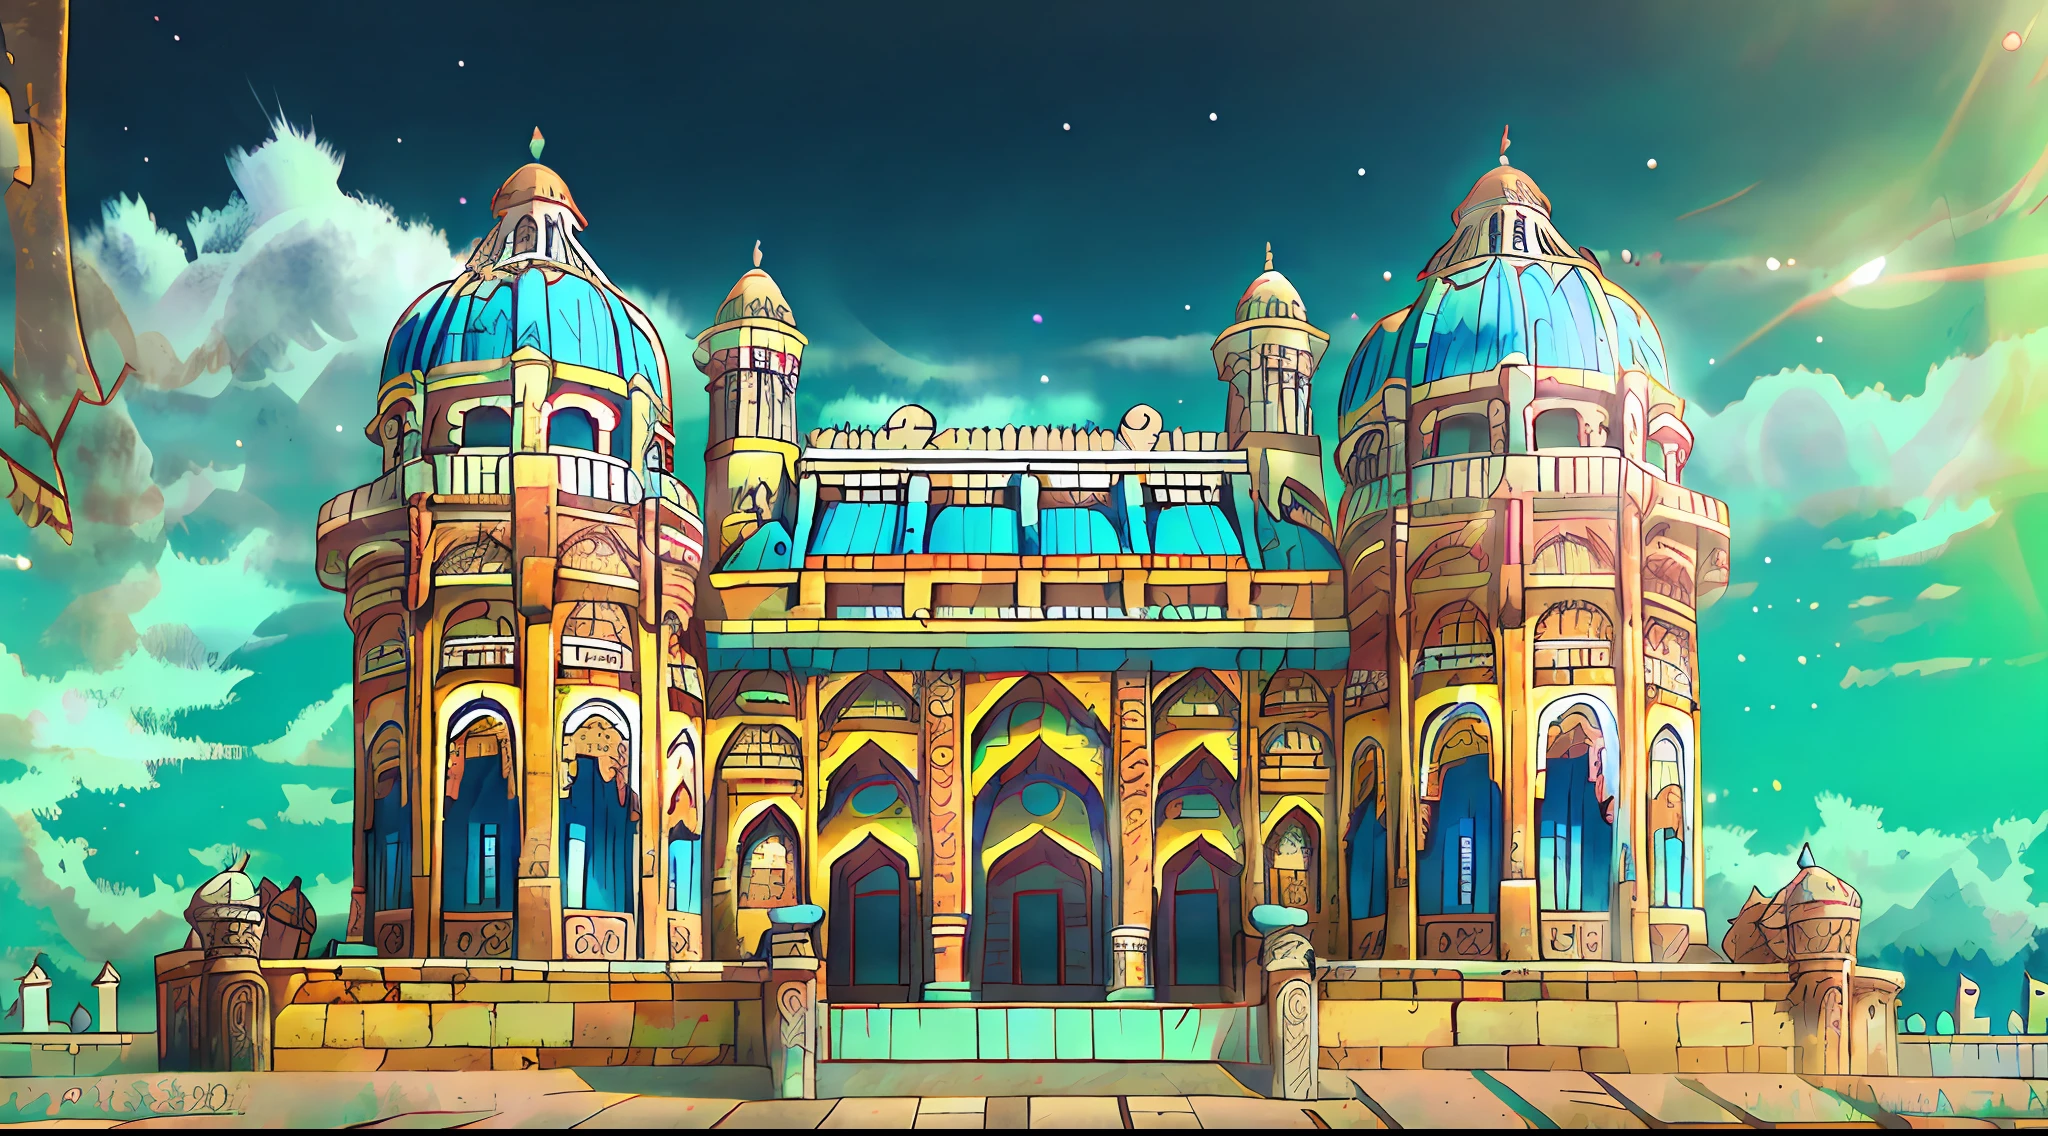 criar um antigo palácio indiano imagem realista e de alta qualidade, em tons de azul e amarelo, com sol e céu azul e algumas nuvens brancas.